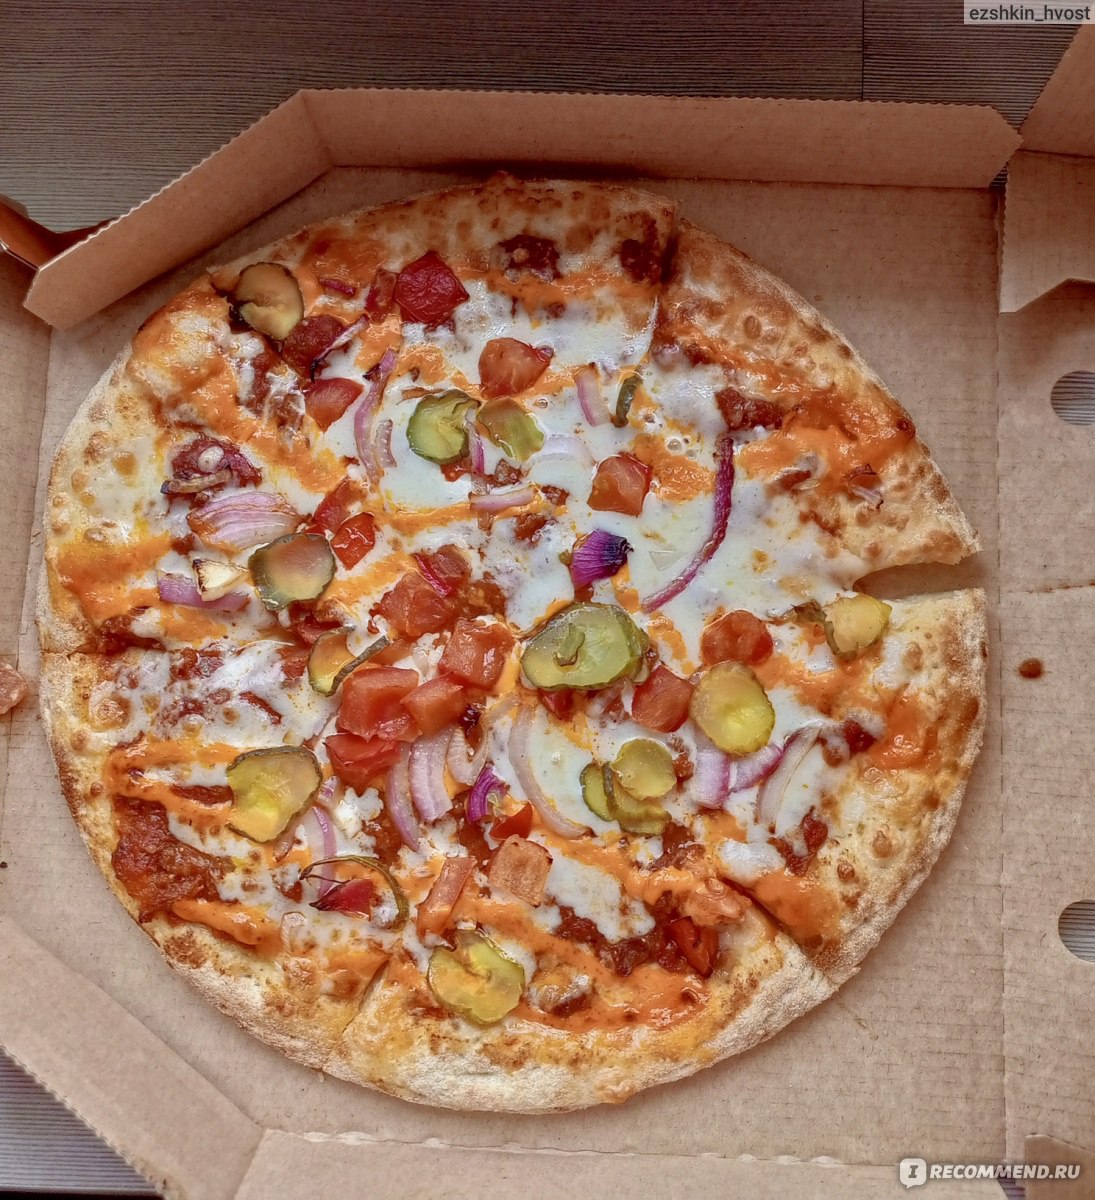 сколько стоит маленькая пицца пепперони в додо пицца фото 41